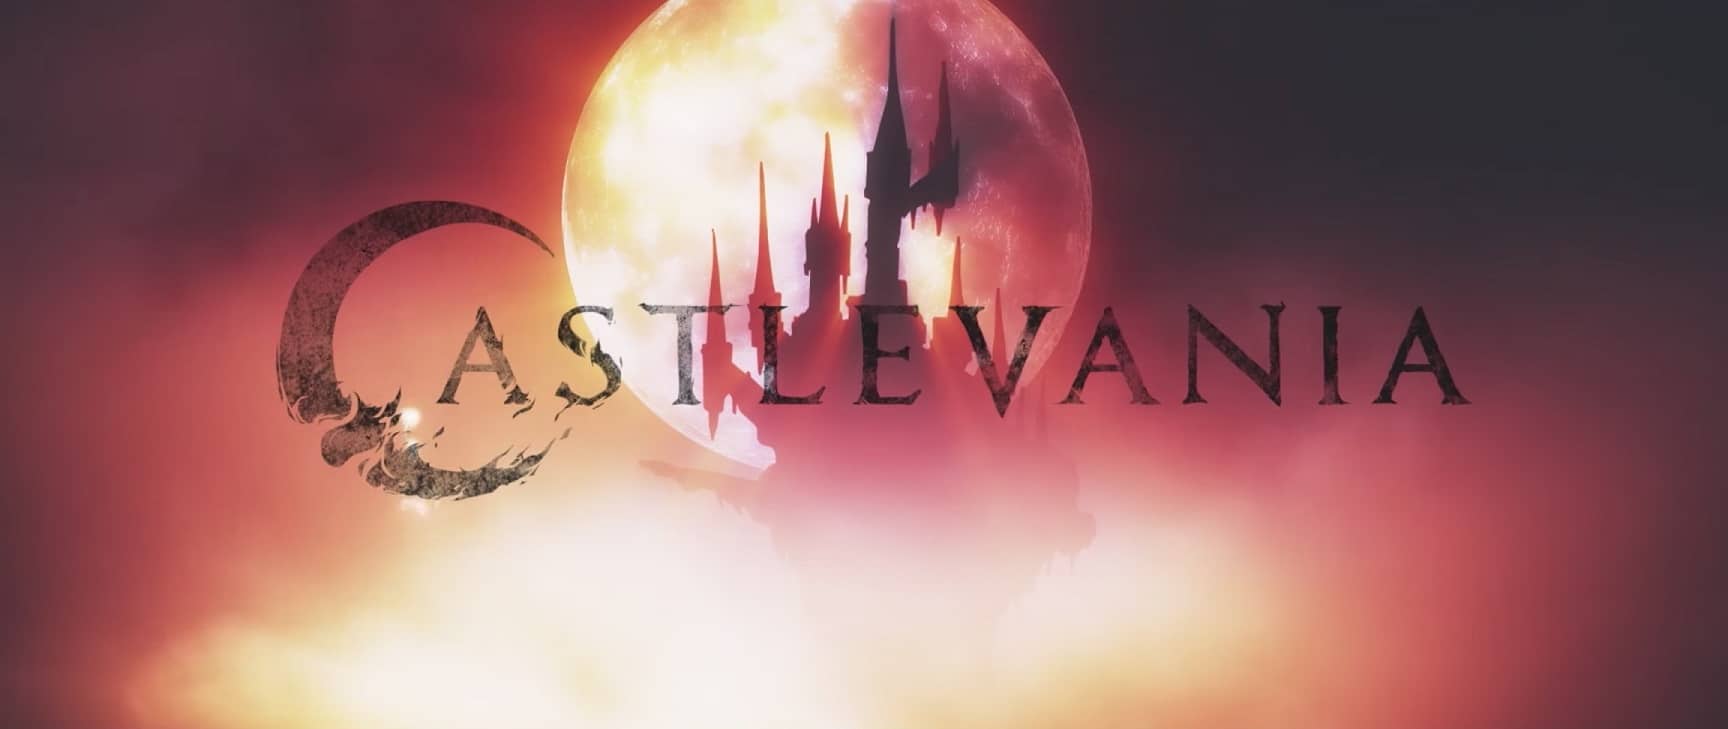 El reparto de la serie Castlevania de Netflix ha sido revelado-1gAMERSrd